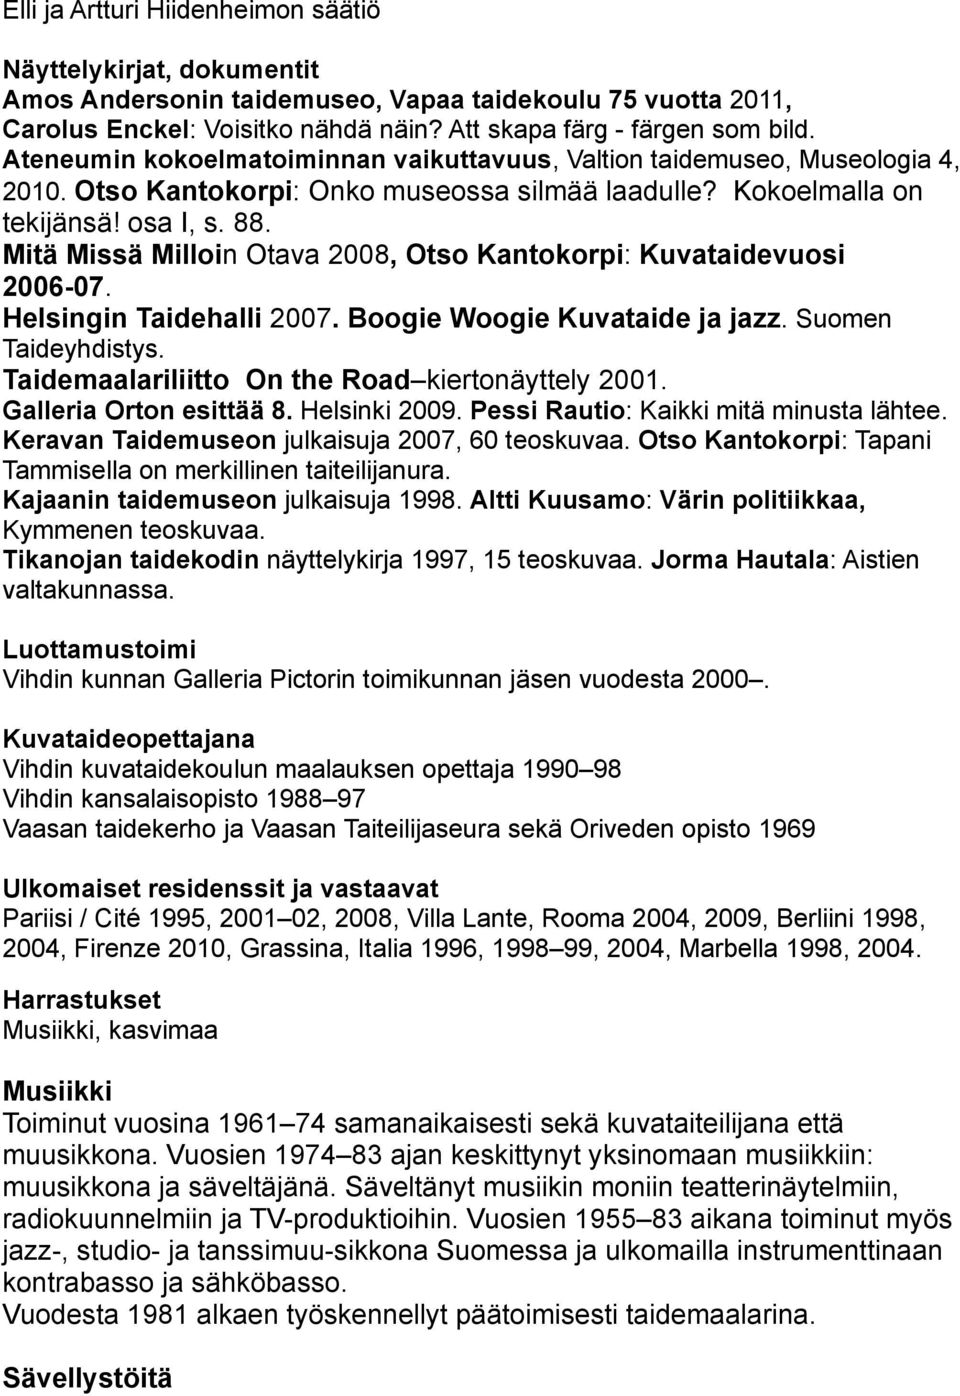 Mitä Missä Milloin Otava 2008, Otso Kantokorpi: Kuvataidevuosi 2006-07. Helsingin Taidehalli 2007. Boogie Woogie Kuvataide ja jazz. Suomen Taideyhdistys.